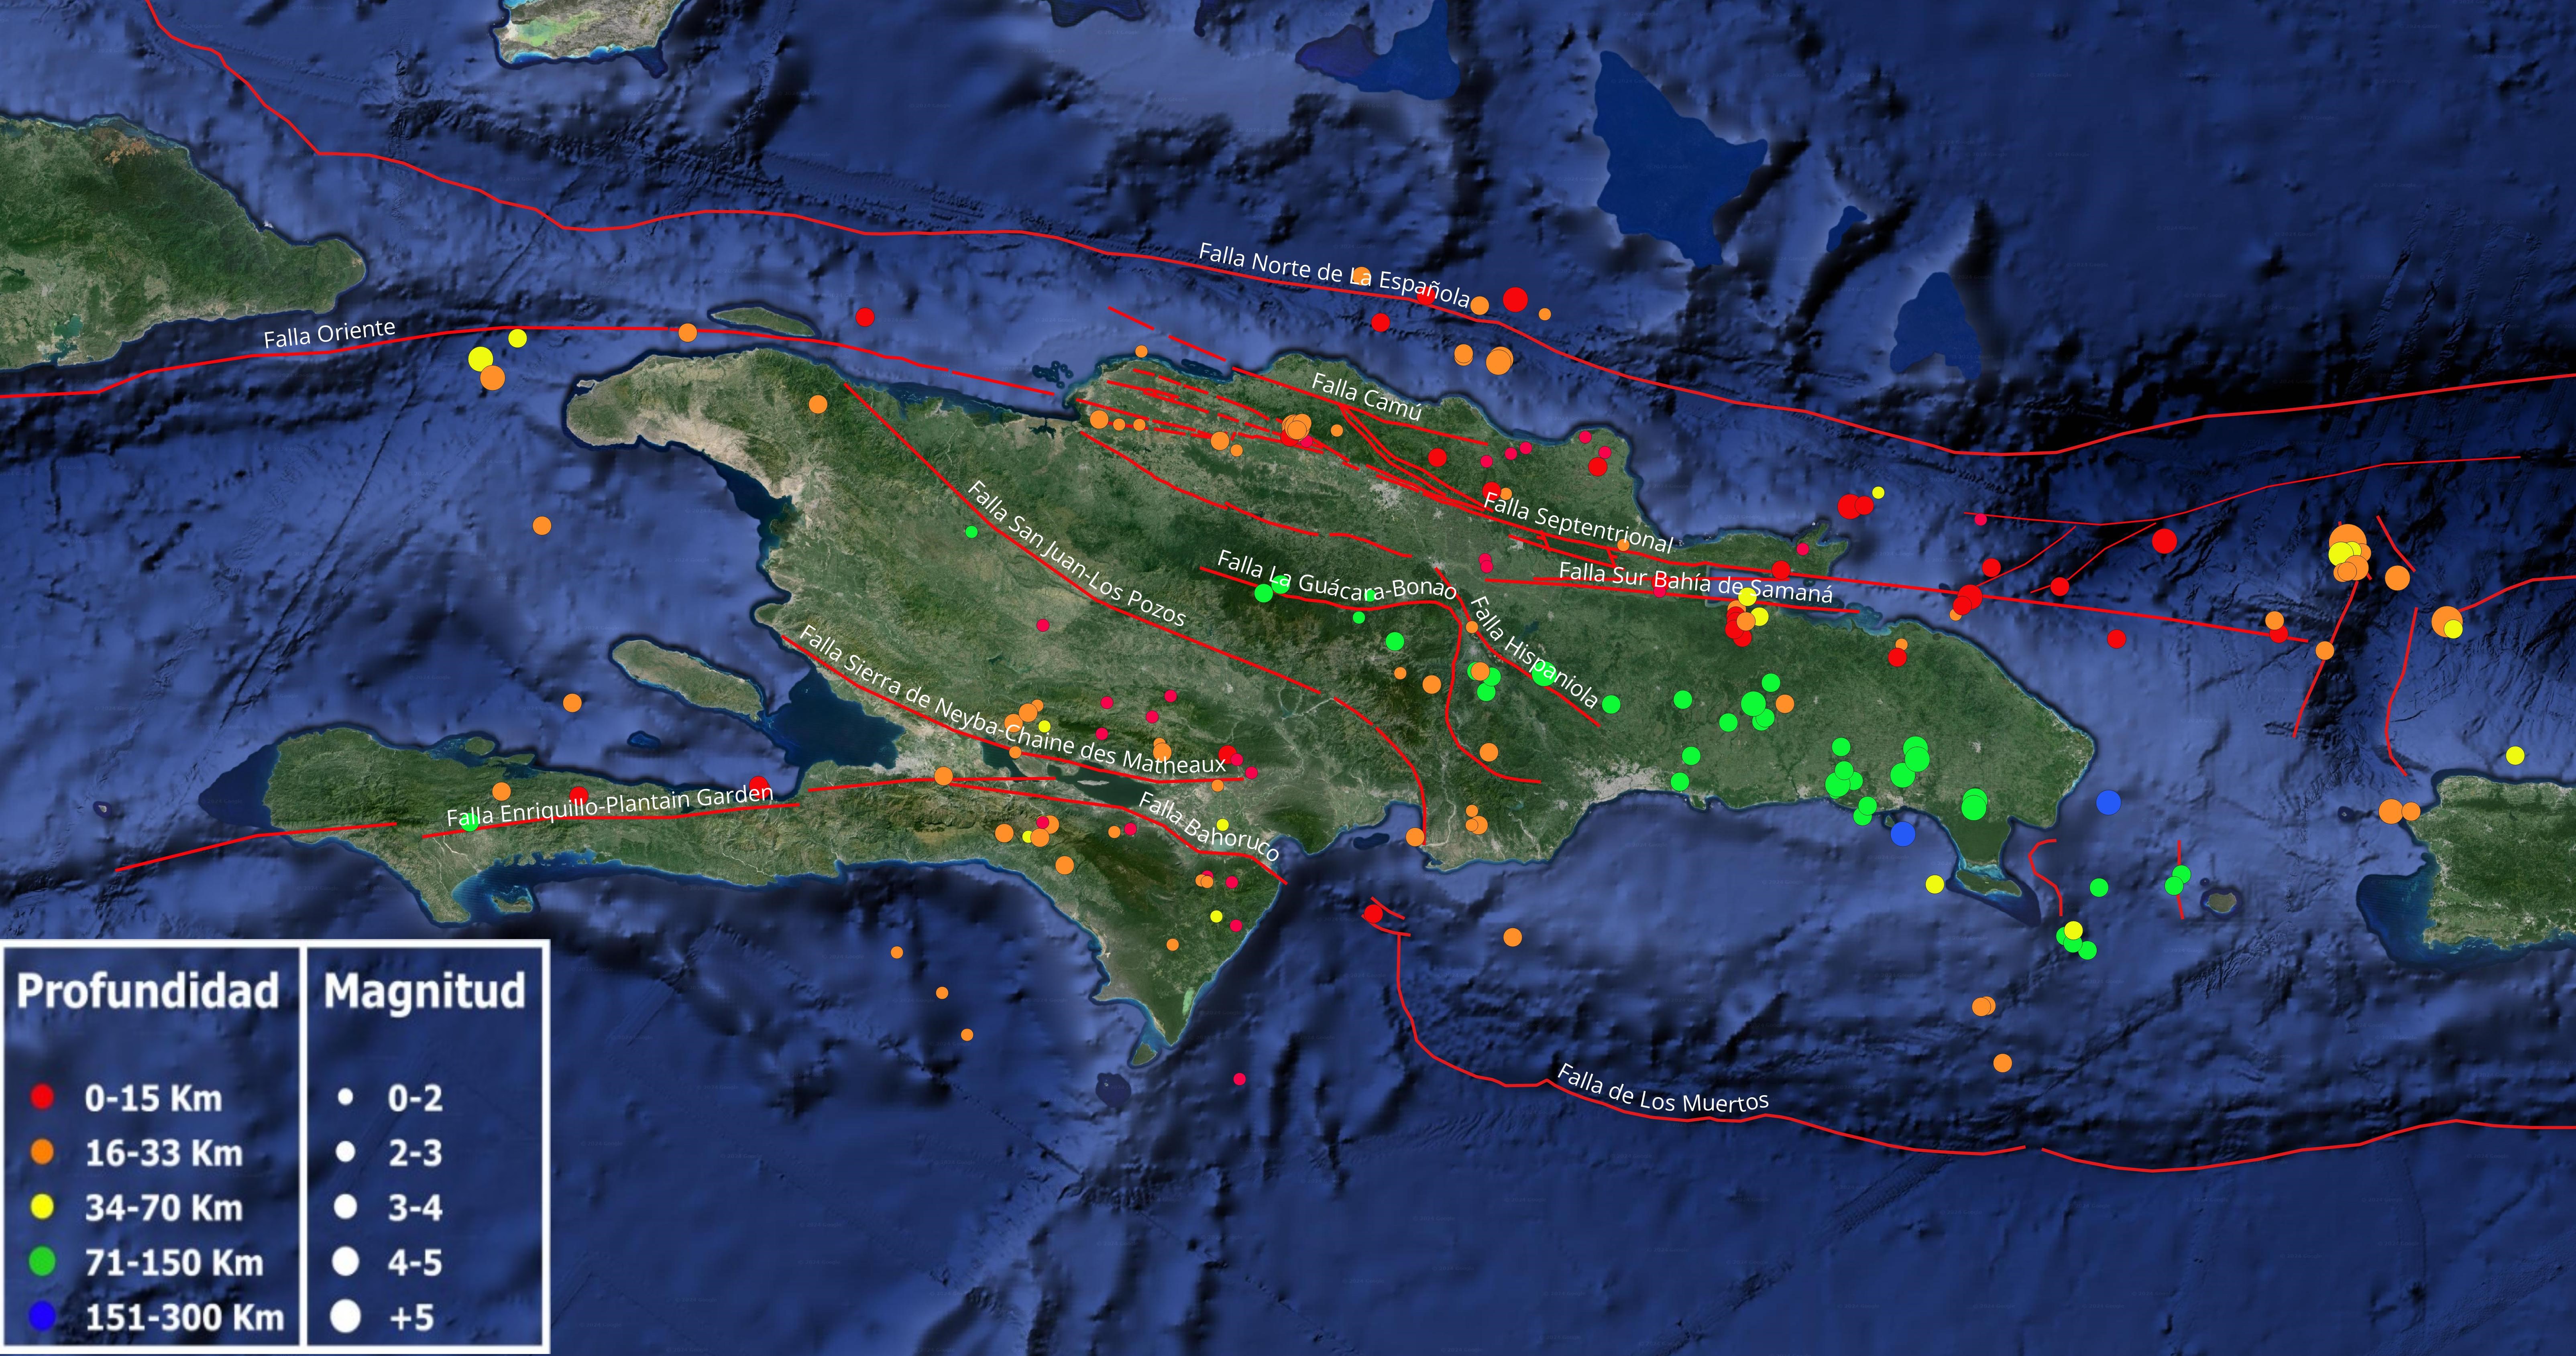 Imagen N° 1: Mapa cortesía de Google Earth mostrando sismicidad sobre la isla de La Española y alrededores en el pasado mes de mayo. Los lineamientos en rojo indican las principales falla geológicas activas compiladas por diferentes autores de sus estudios publicados.